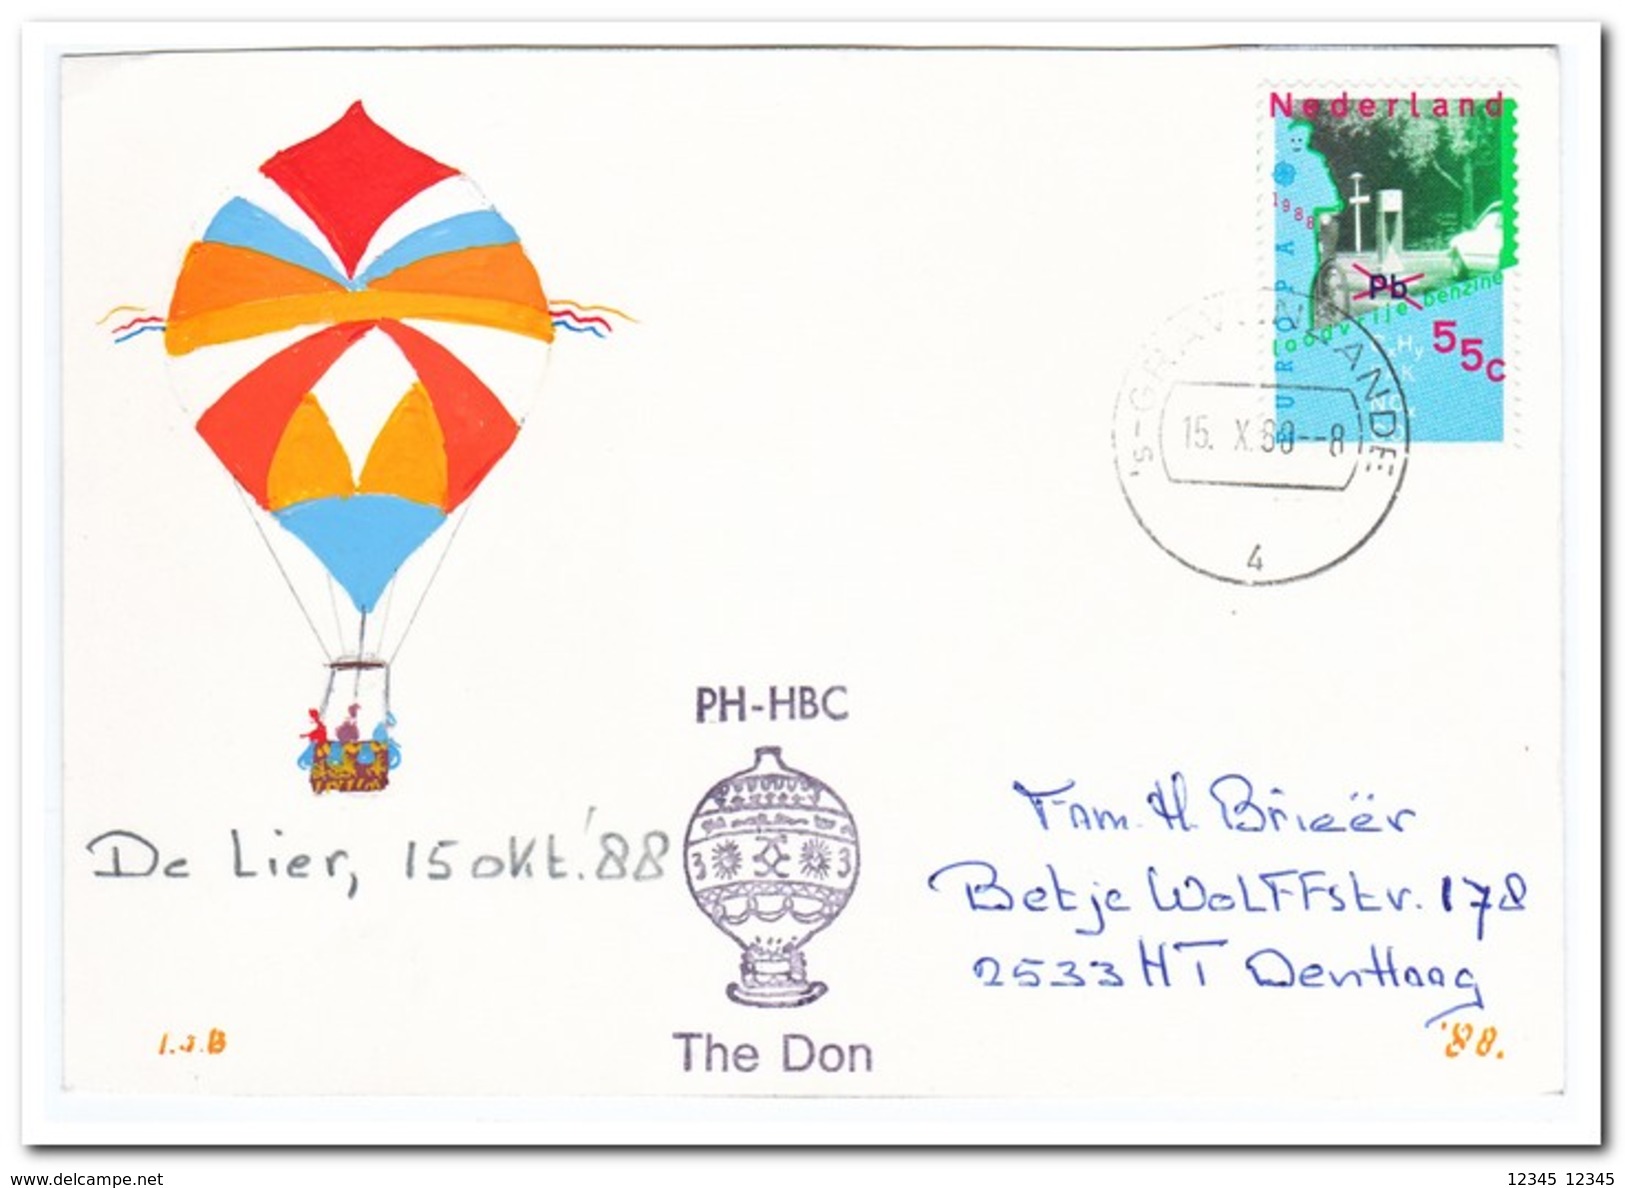 Ballonvaart De Lier 15-10-1988, The Don - Luchtballons